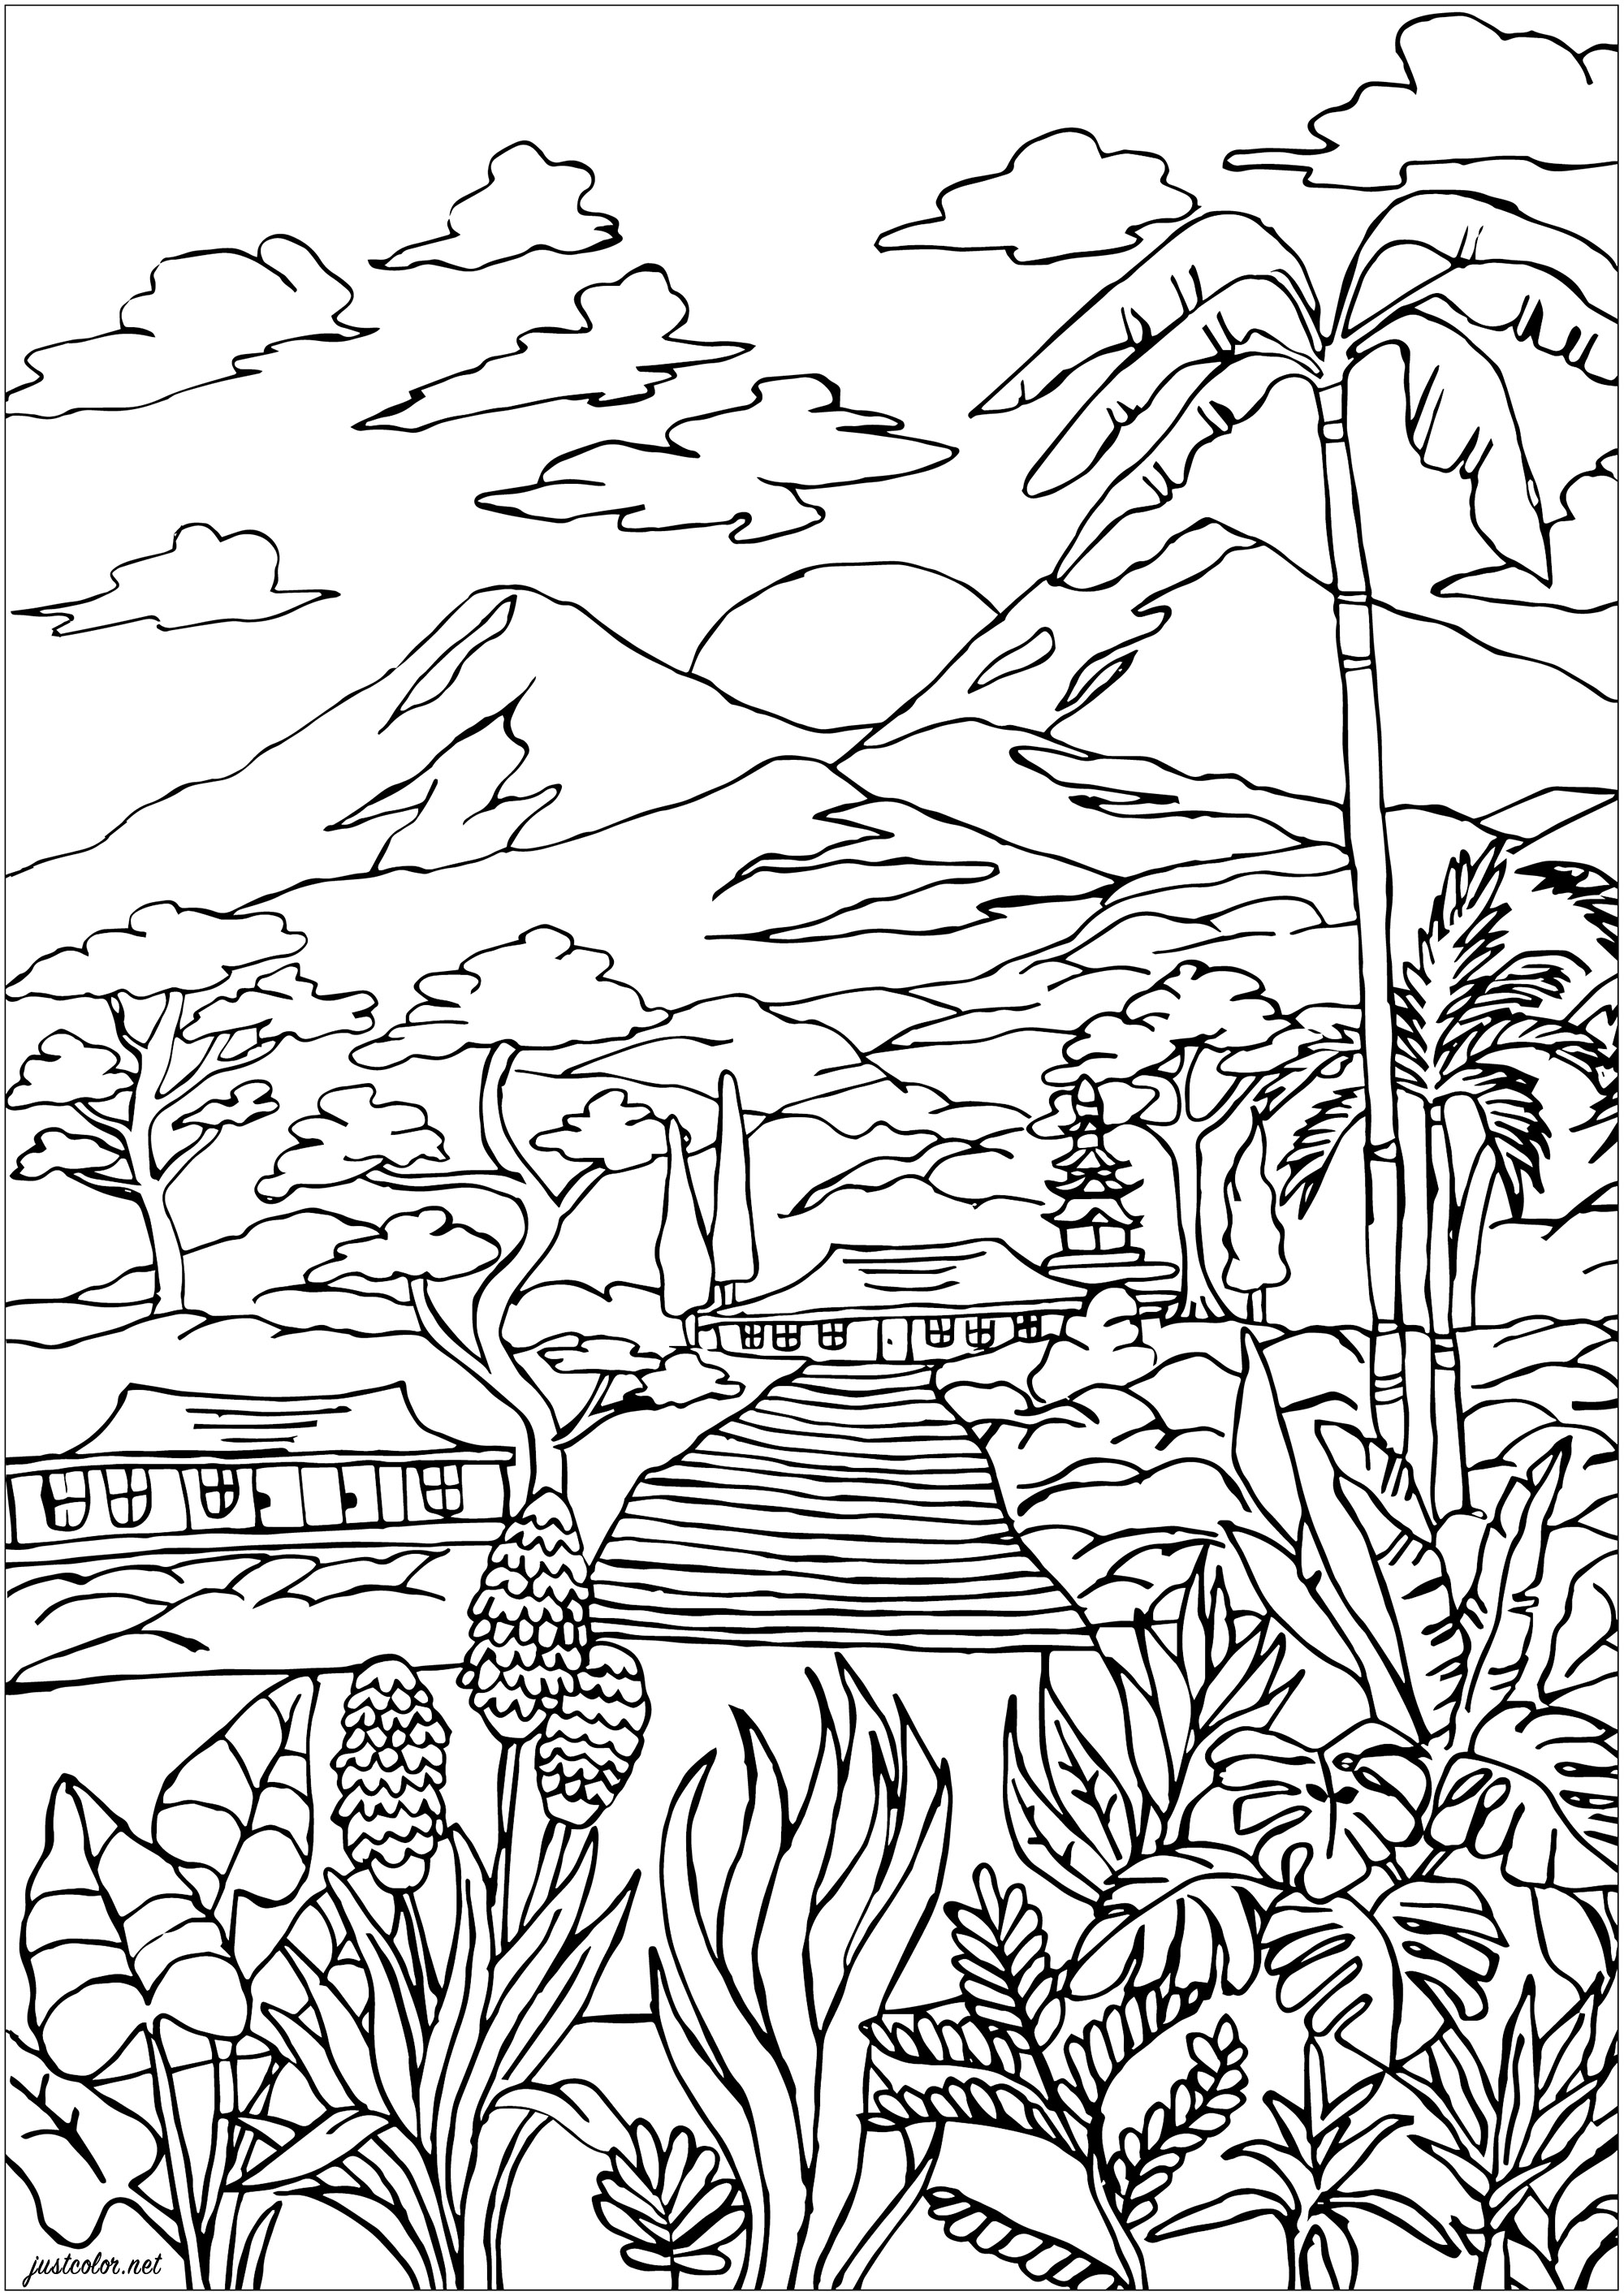 Paisagem da Martinica: Vista de vulcões, casas crioulas, vegetação luxuriante com palmeiras e plantas bonitas para colorir. A Martinica é uma ilha das Pequenas Antilhas, ou Ilhas de Barlavento. O seu ponto mais alto é o vulcão Montagne Pelée (1.397 m). A ilha tornou-se francesa em 1635, Artista : Morgan